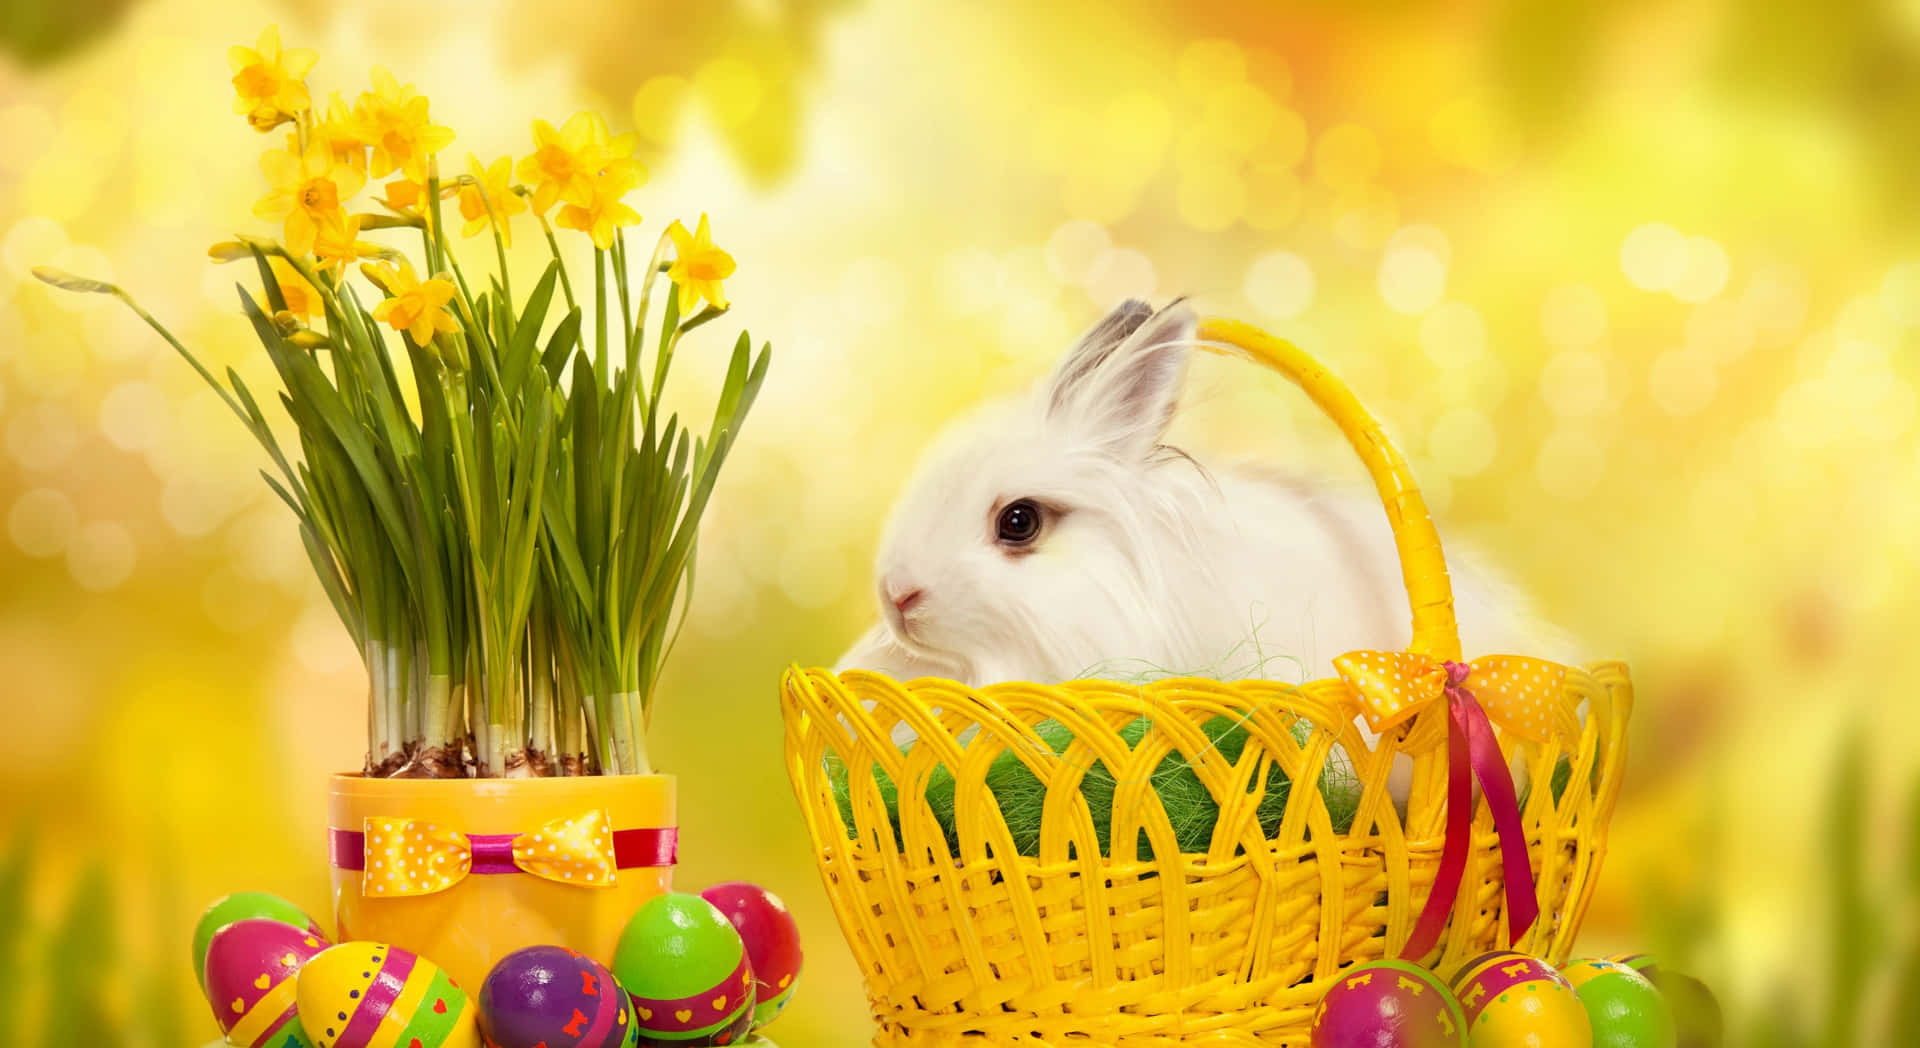 Fotodivertente Di Un Coniglio Di Pasqua Sul Cestino